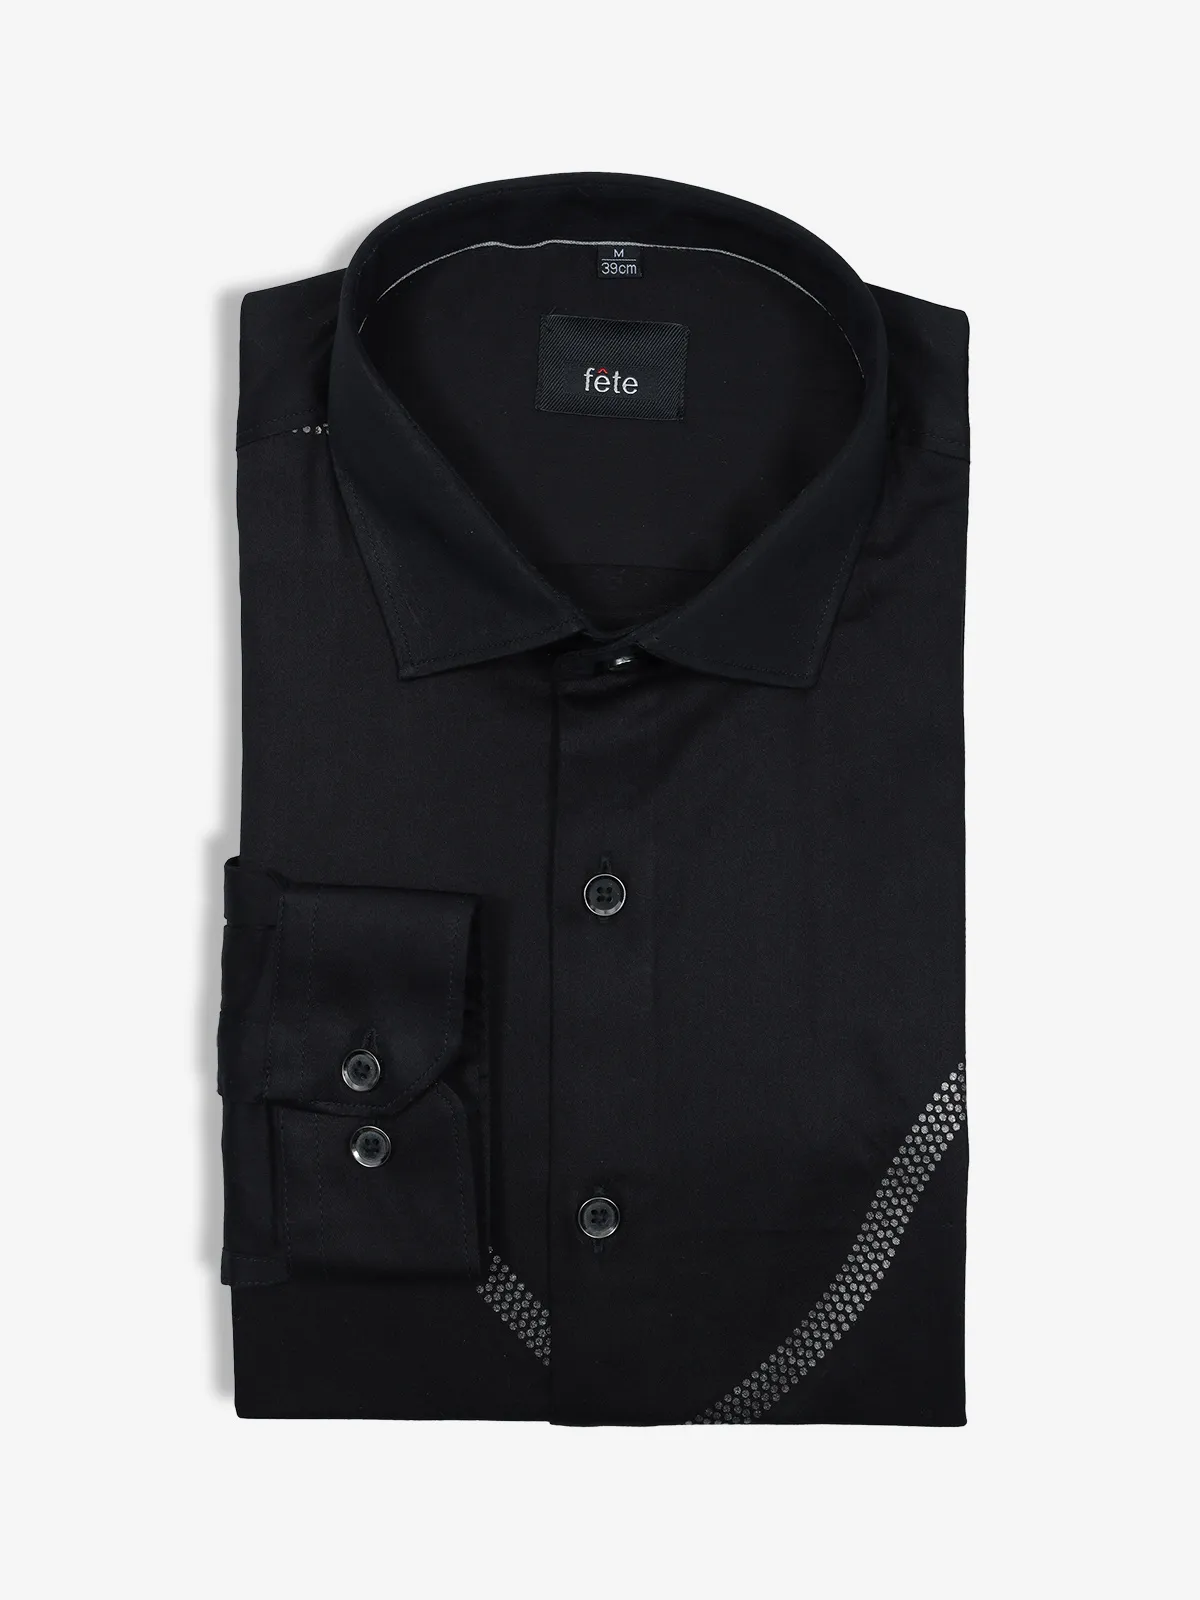 FETE plain black cotton shirt